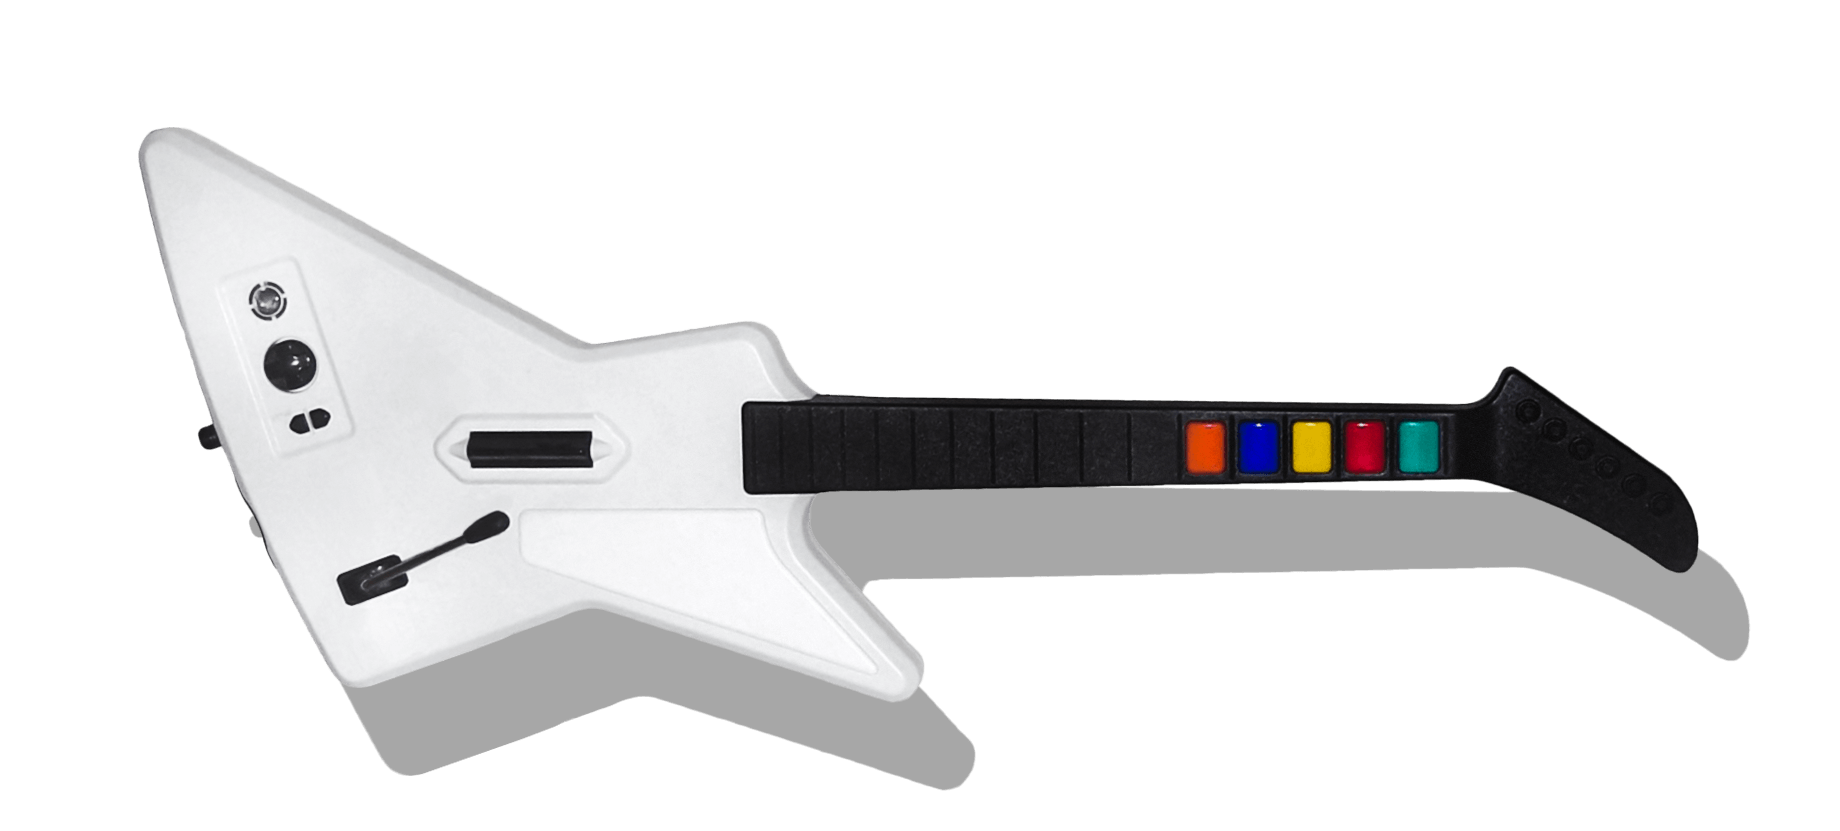 Guitar Hero Xplorer guitar